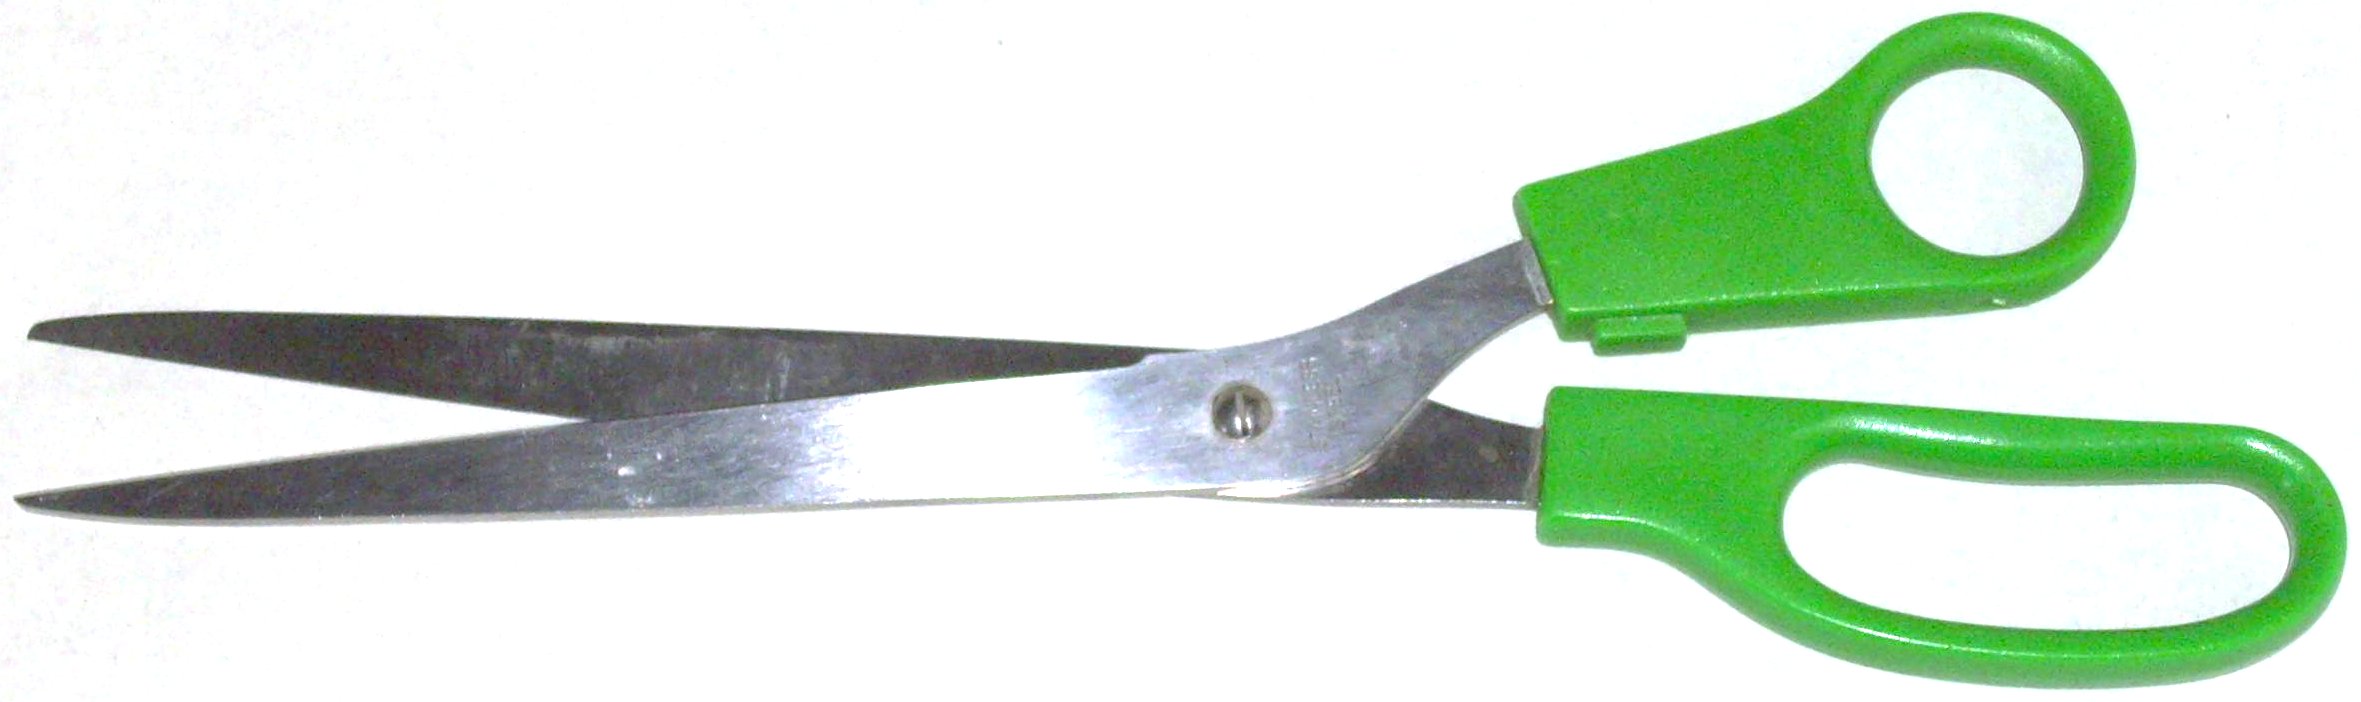 tijeras de papel tapiz,herramienta,cincel,herramienta de mano metalmecánica,herramienta para cortar,herramienta de mano